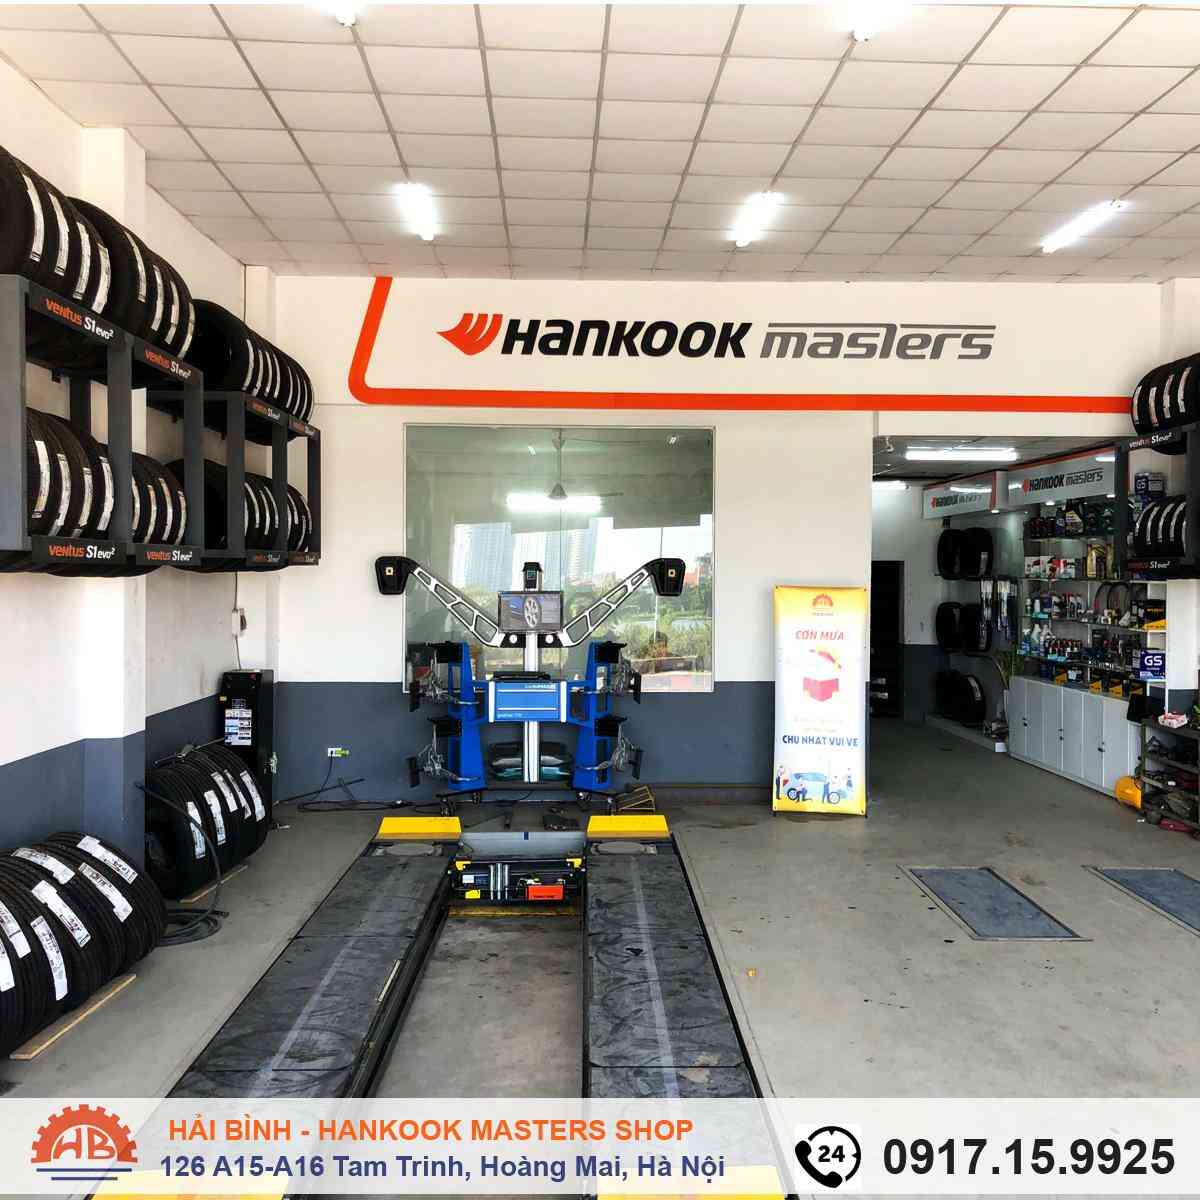 Hải Bình Hankook Mastershop cung cấp dịch vụ cân chỉnh độ chụm, cân chỉnh góc đặt bánh xe chuyên nghiệp, giá thành hợp lý